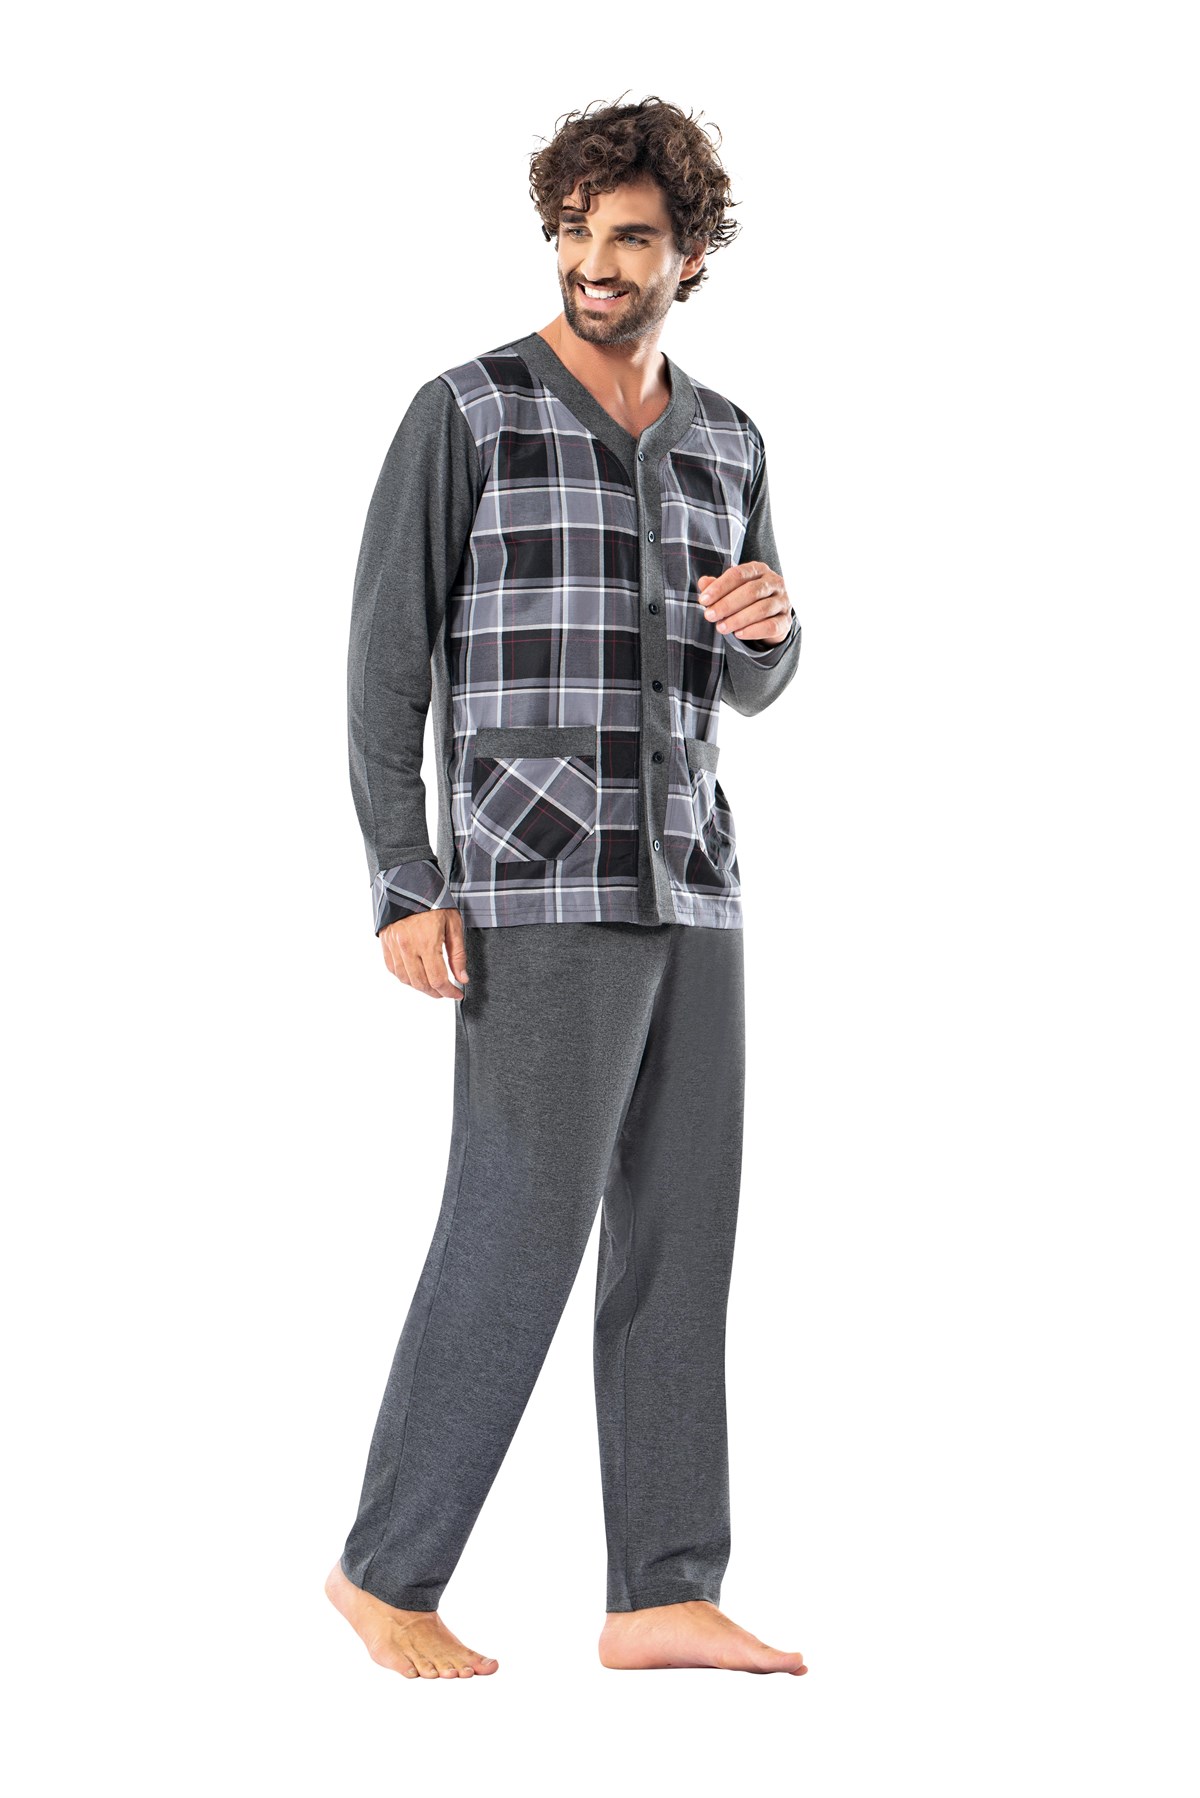 Erdem Erkek Kışlık Önden Düğmeli Pijama: Erdem İç Giyim